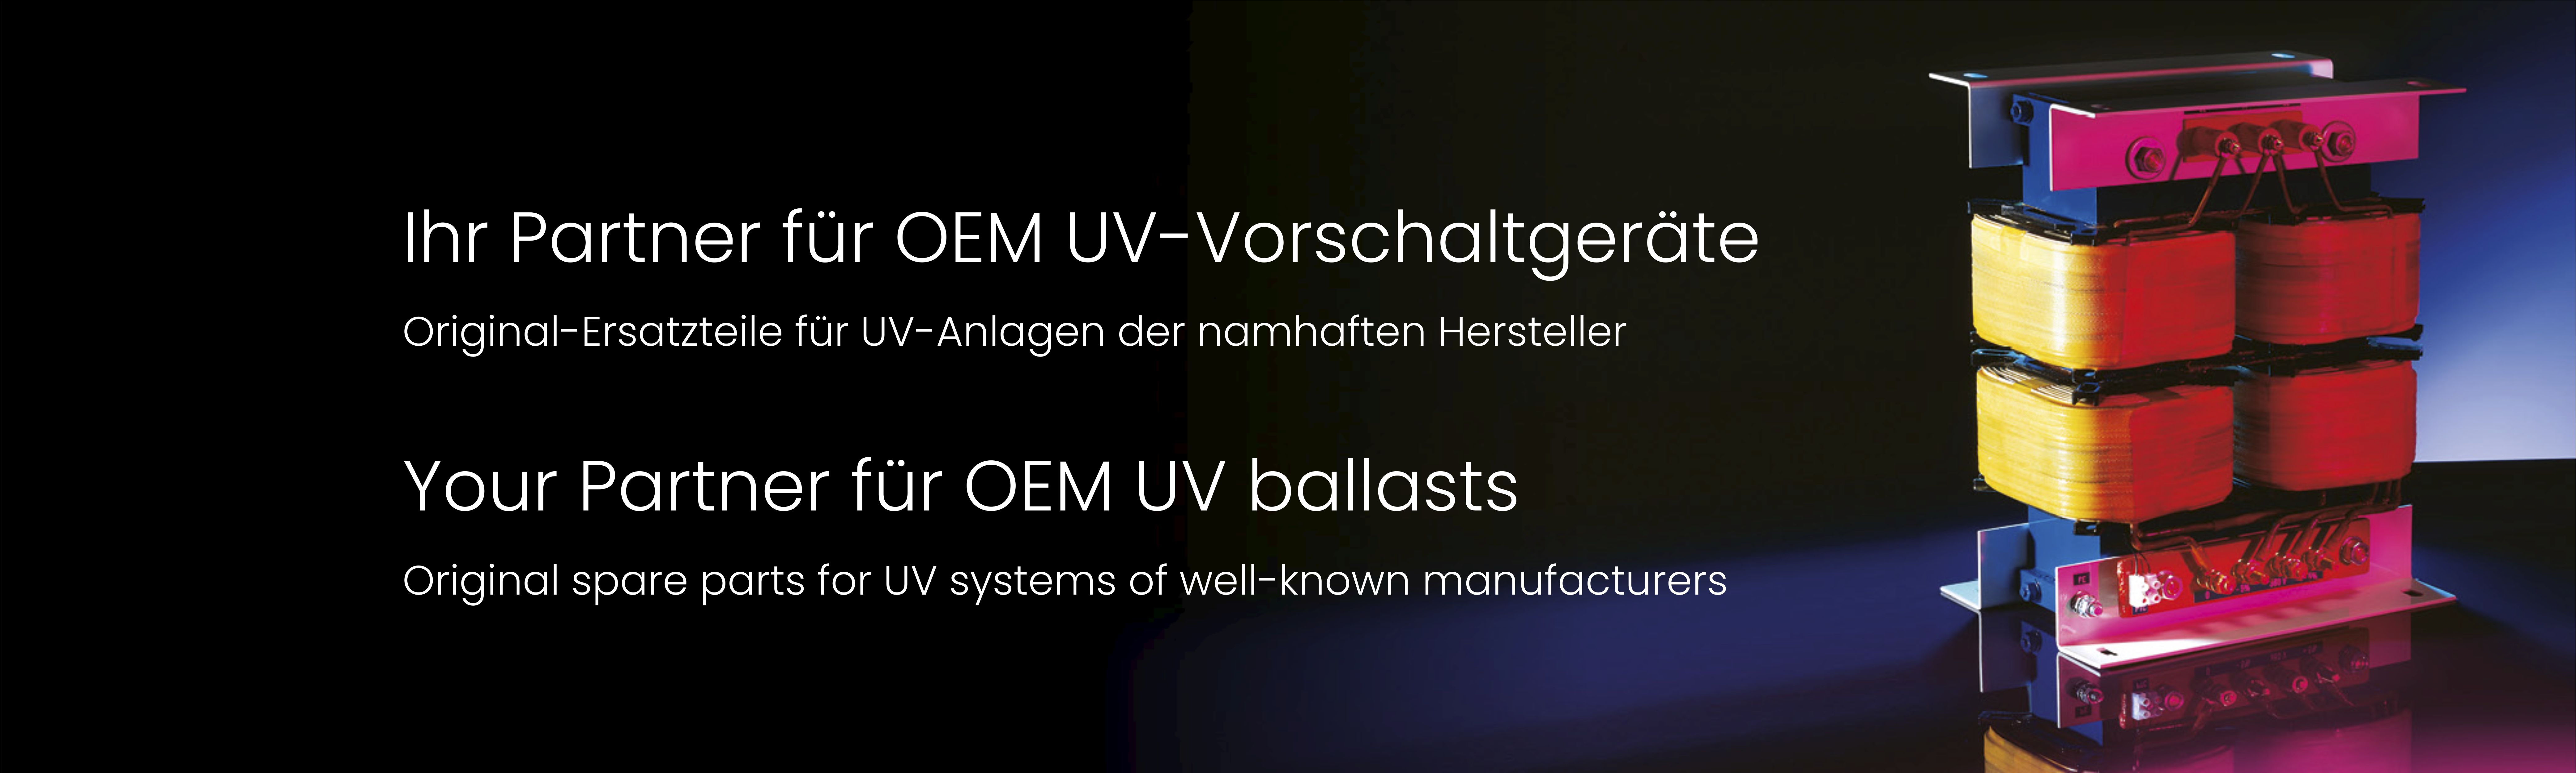 Ihr Partner für OEM UV-Vorschaltgeräte